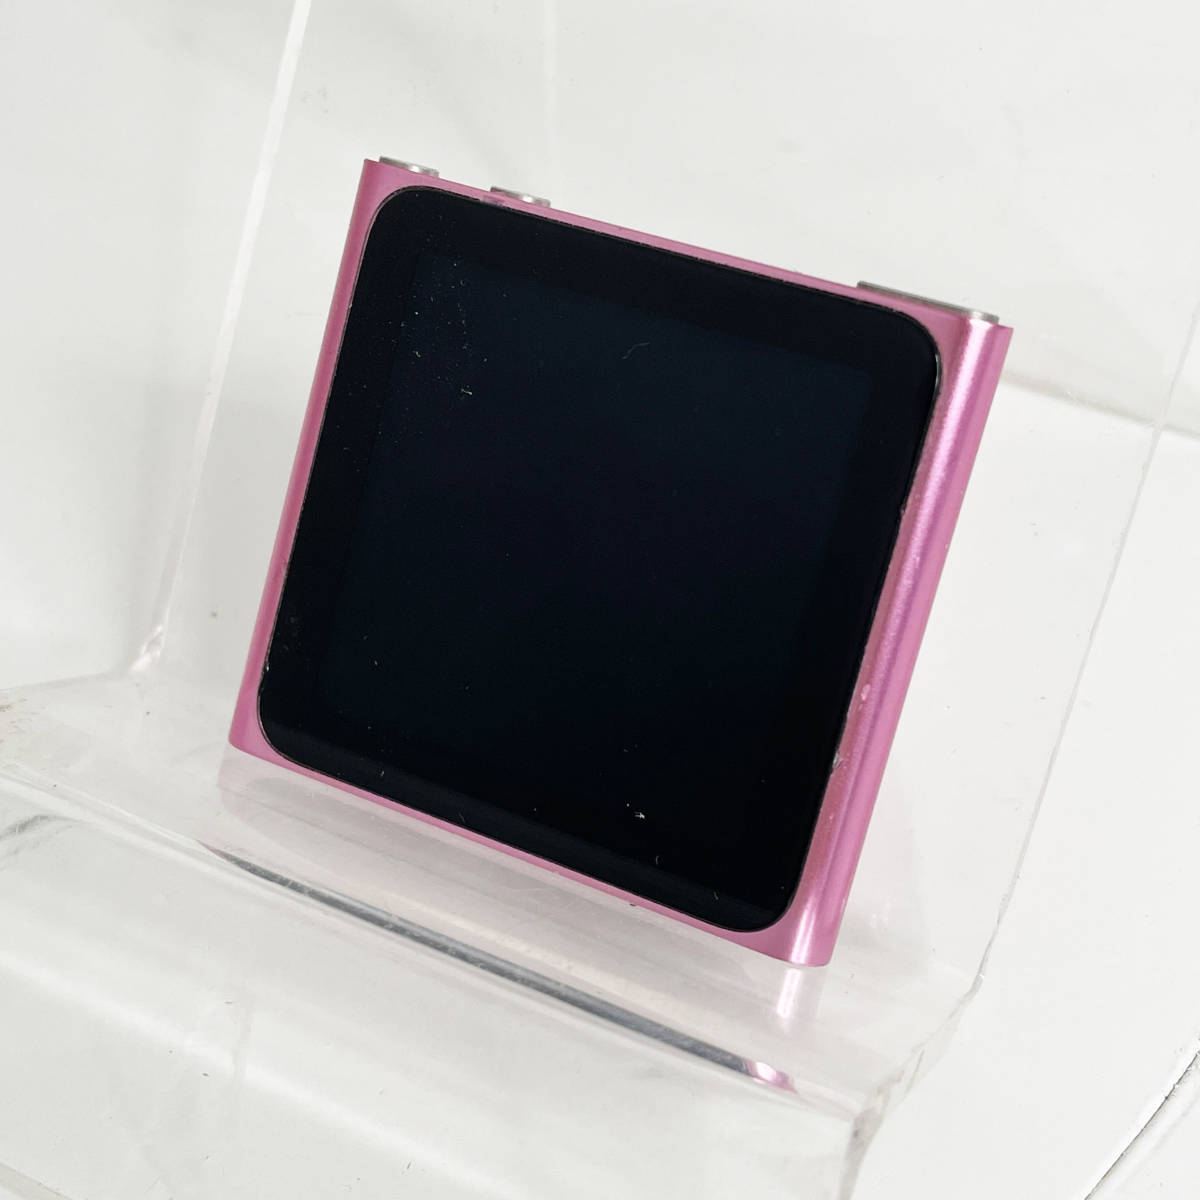 中古☆Apple iPod nano MC698J/A 16GB ピンク 第6世代 時計機能搭載 タッチ操作 充電器付き 動作良好 送料無料